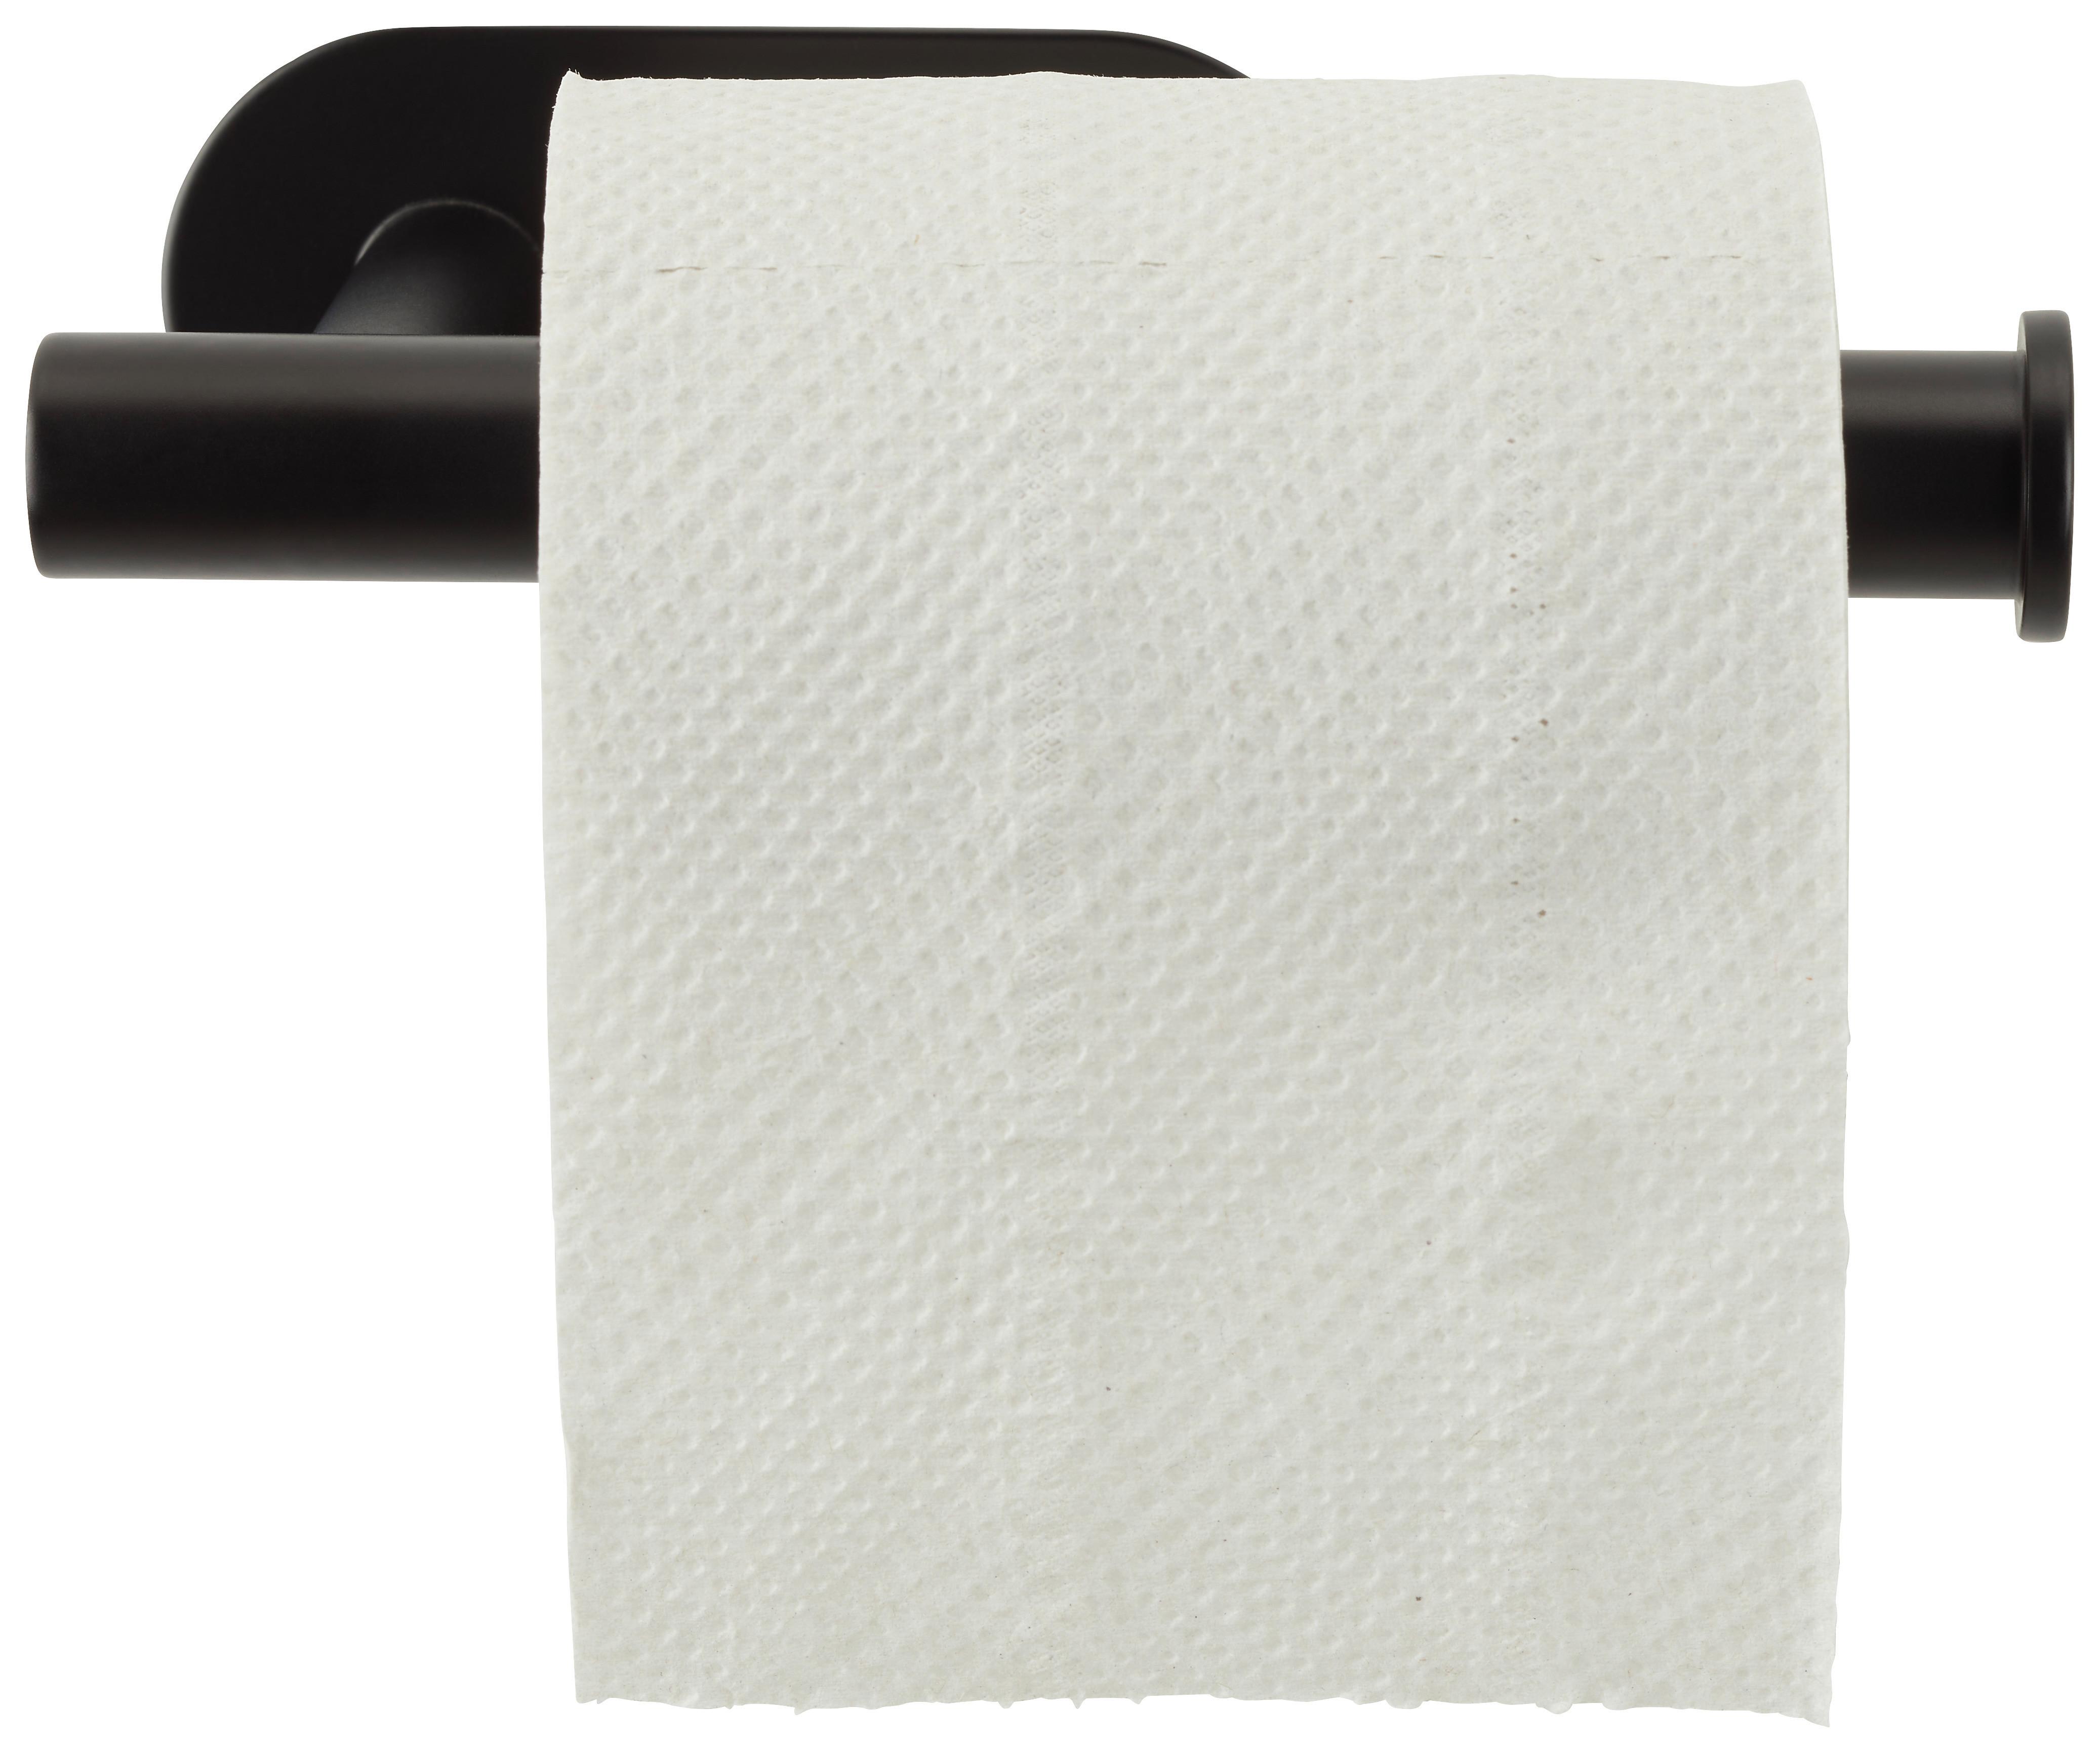 Držák Na Toaletní Papír Turbo-Loc -Sb- - černá, Moderní, kov (16/4,5/7cm) - Modern Living